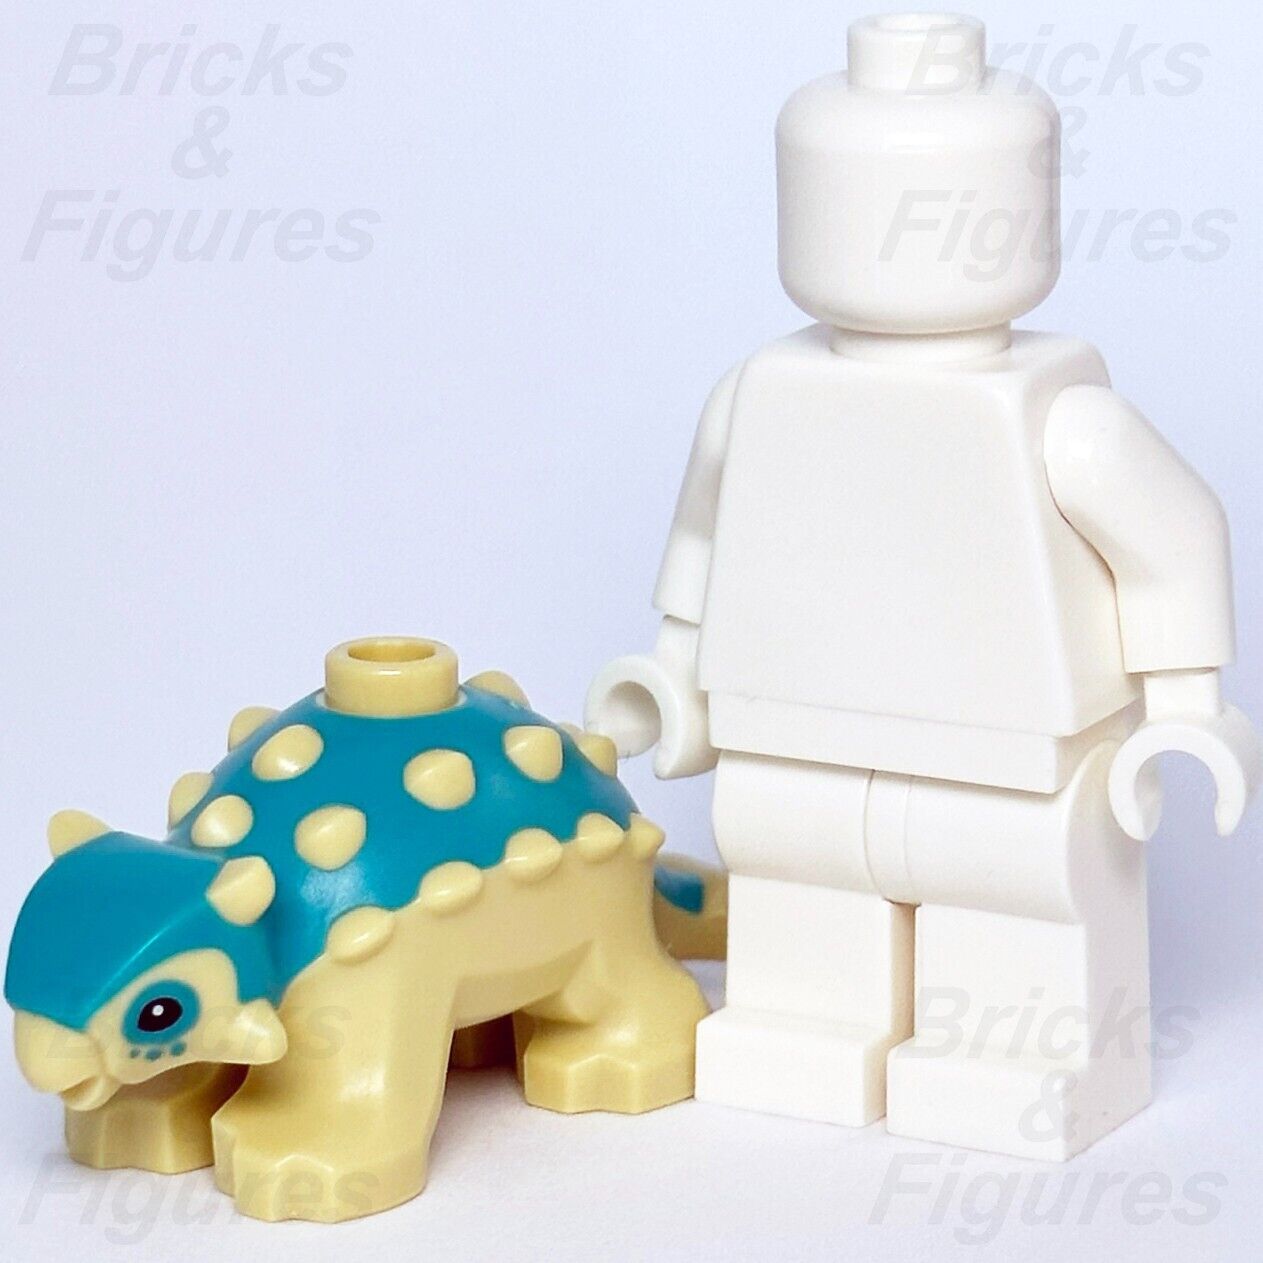 LEGO Jurassic World Baby Ankylosaurus Dinosaur Minifigure Part 75939 67443pb02 - Bricks & Figures